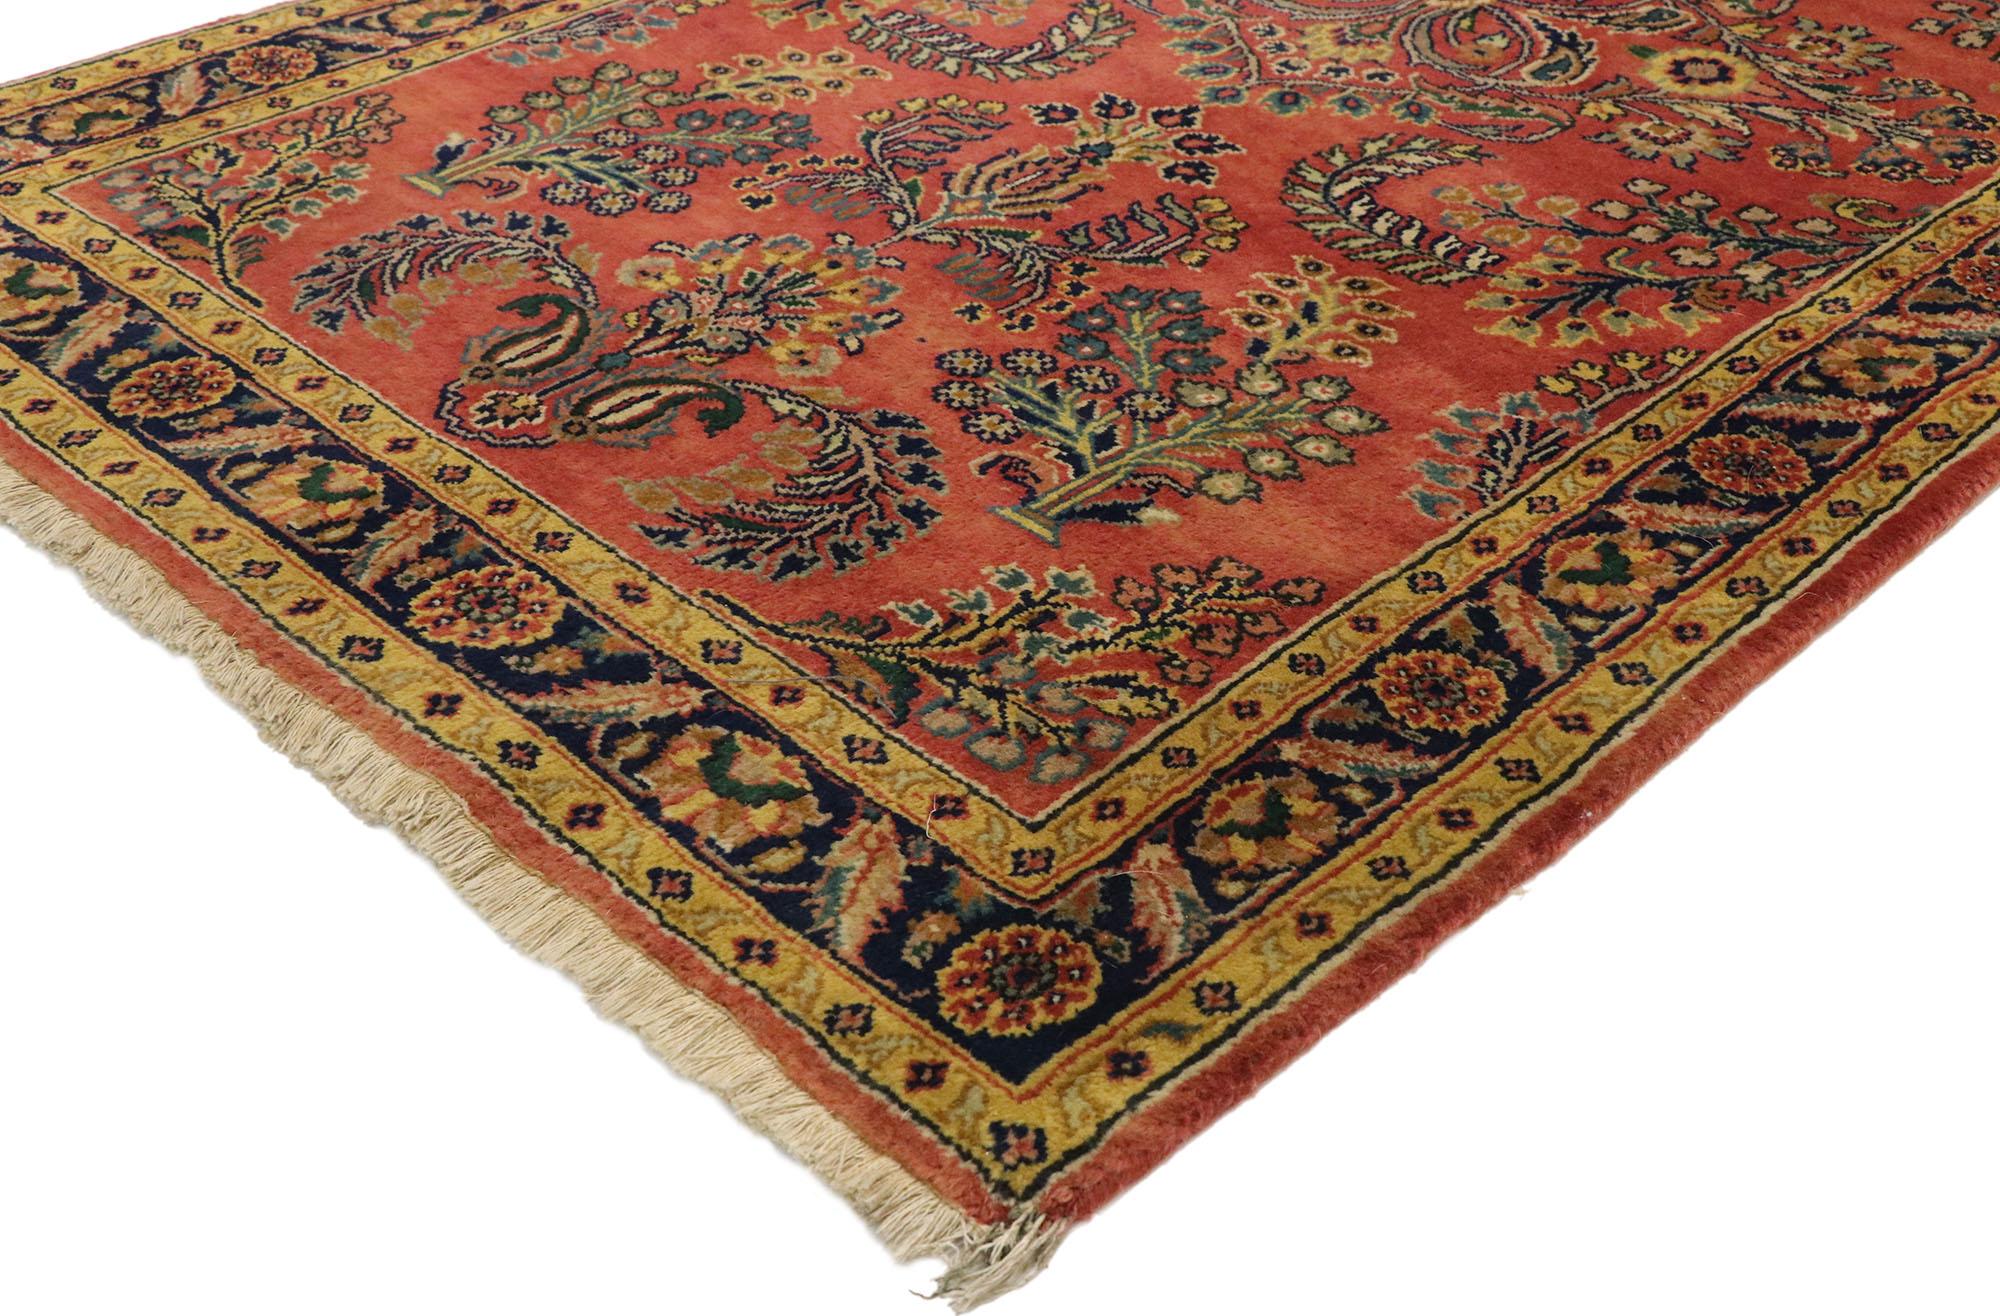 77522, alter persischer Sarouk-Teppich mit Blumenmuster im traditionellen englischen Tudor-Stil. Mit seiner zeitlosen Anziehungskraft, den raffinierten Farben und den architektonischen Designelementen lässt sich dieser handgeknüpfte Sarouk-Teppich